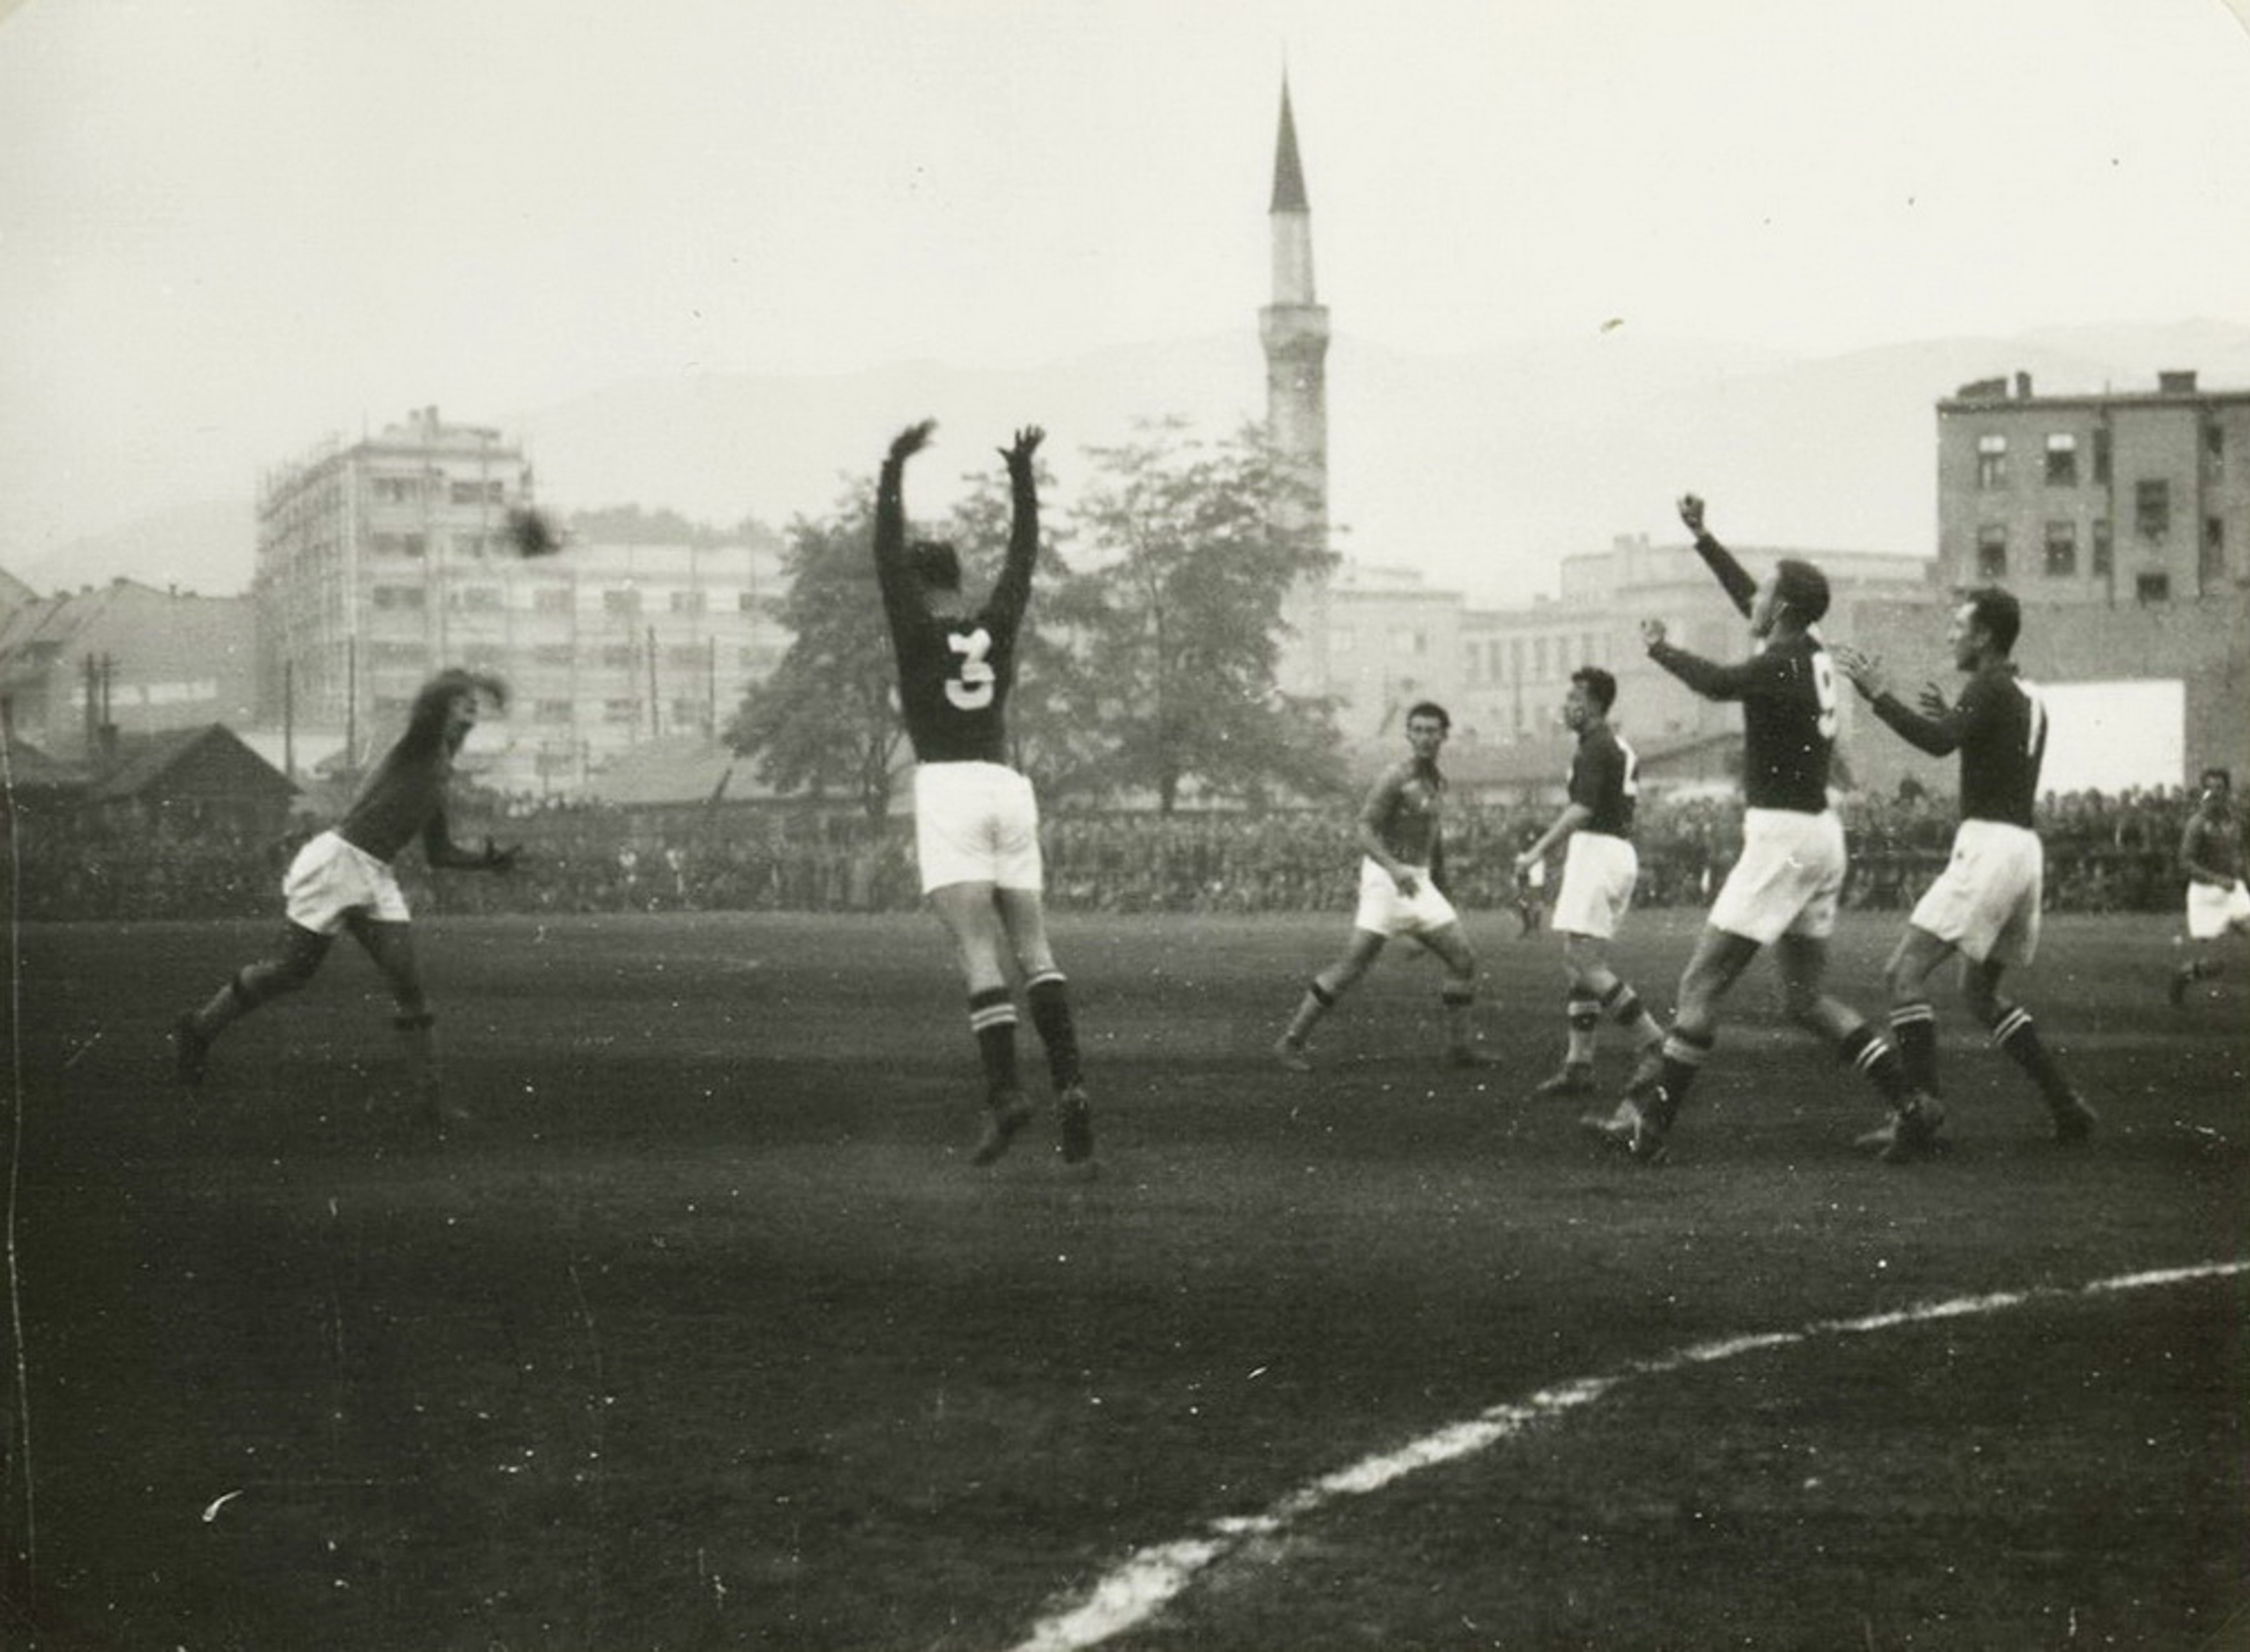 18.10.1950 Yugoslawien - Schweiz 7:12 (4:6) in Sarajewo, 8000 Zuschauer, Schiedsrichter Klima (AUT)